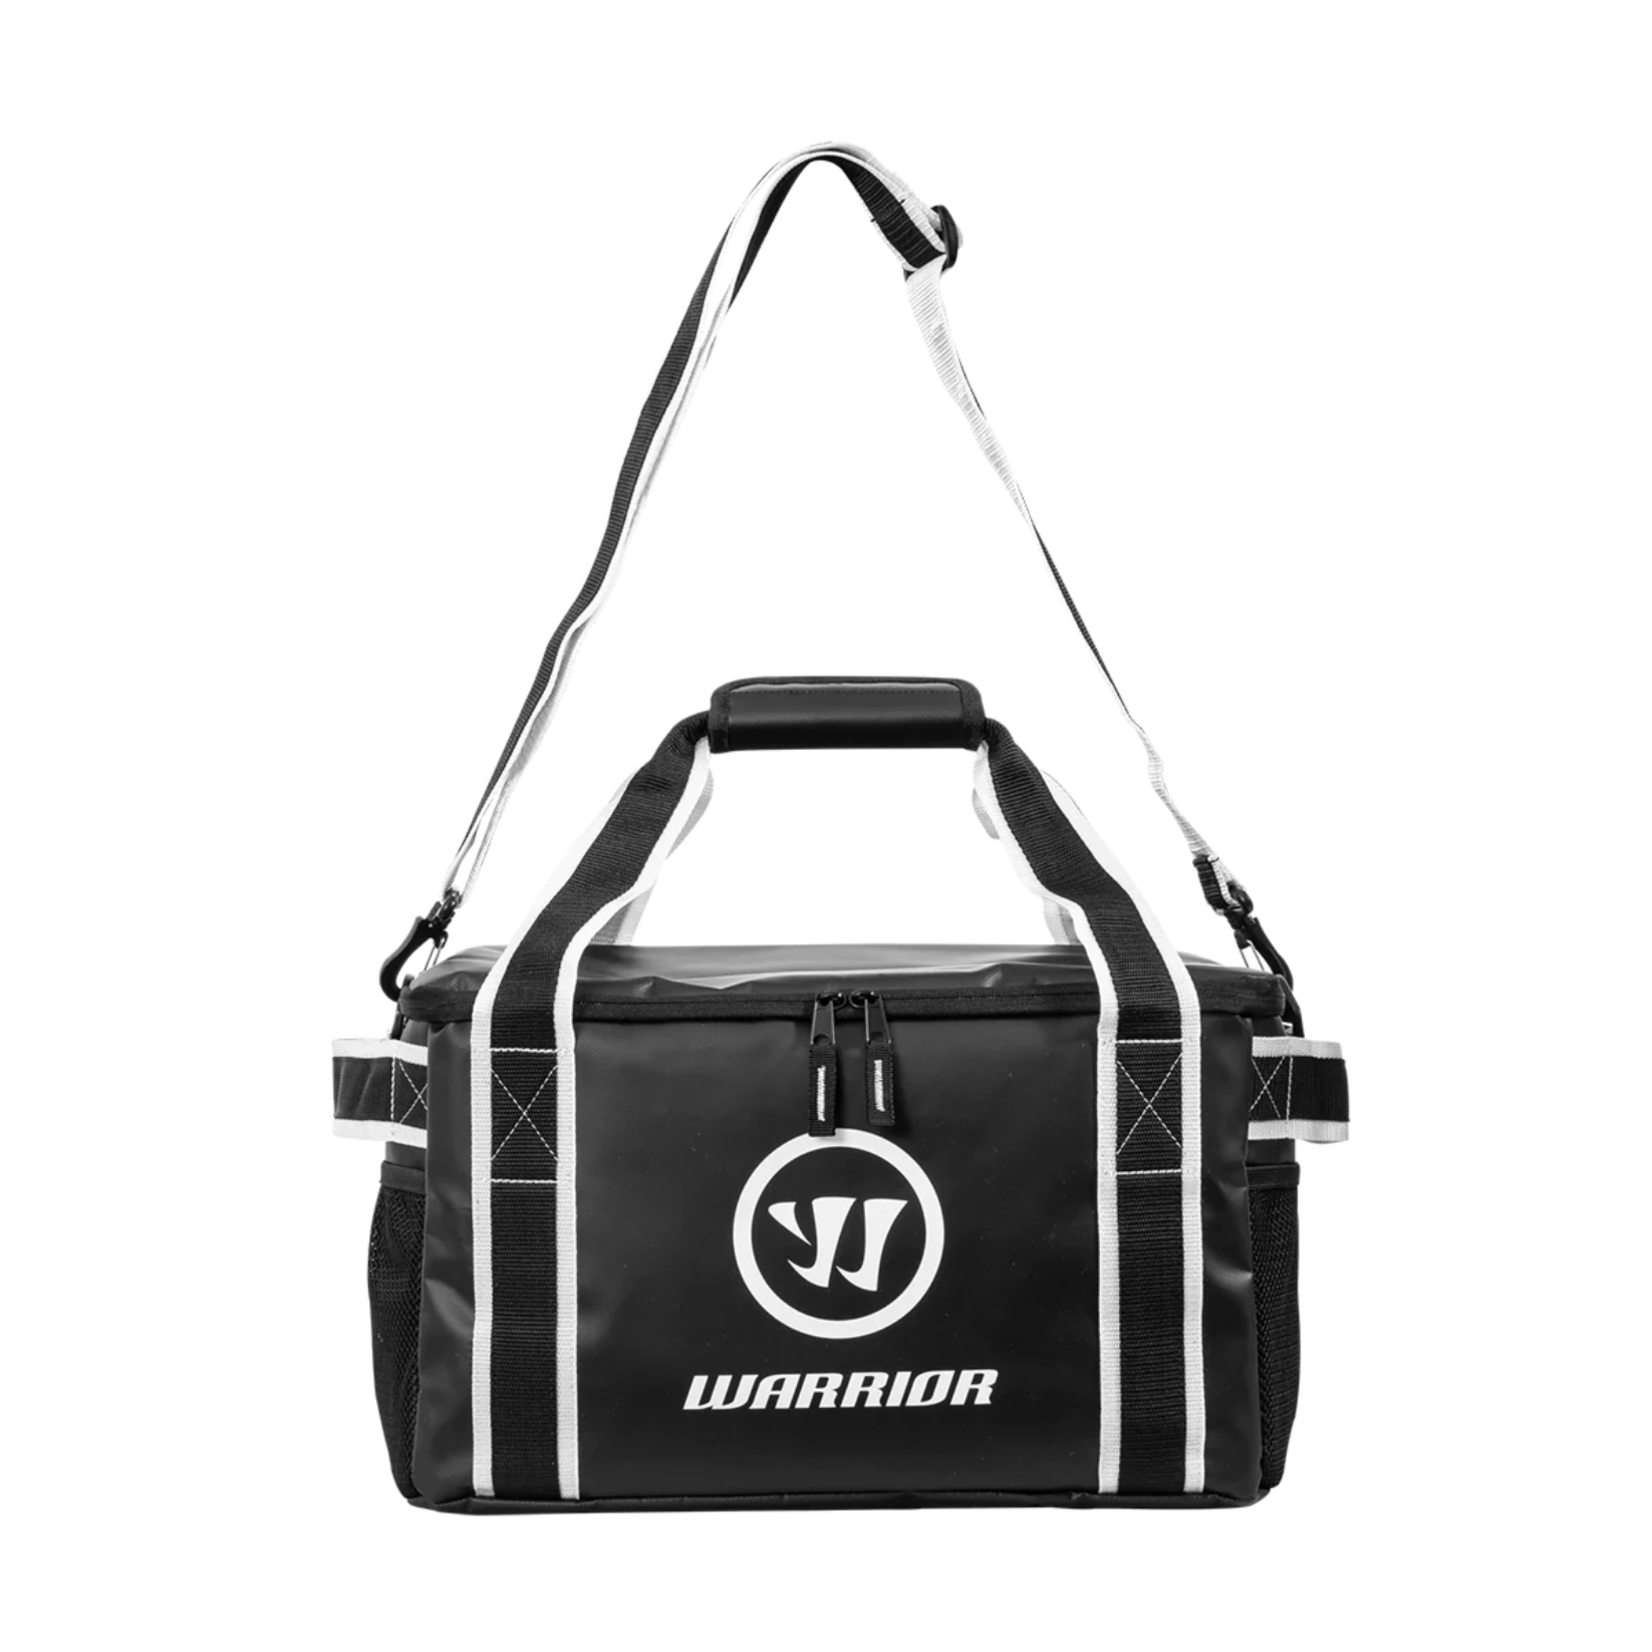 Warrior Pro Cooler Bag